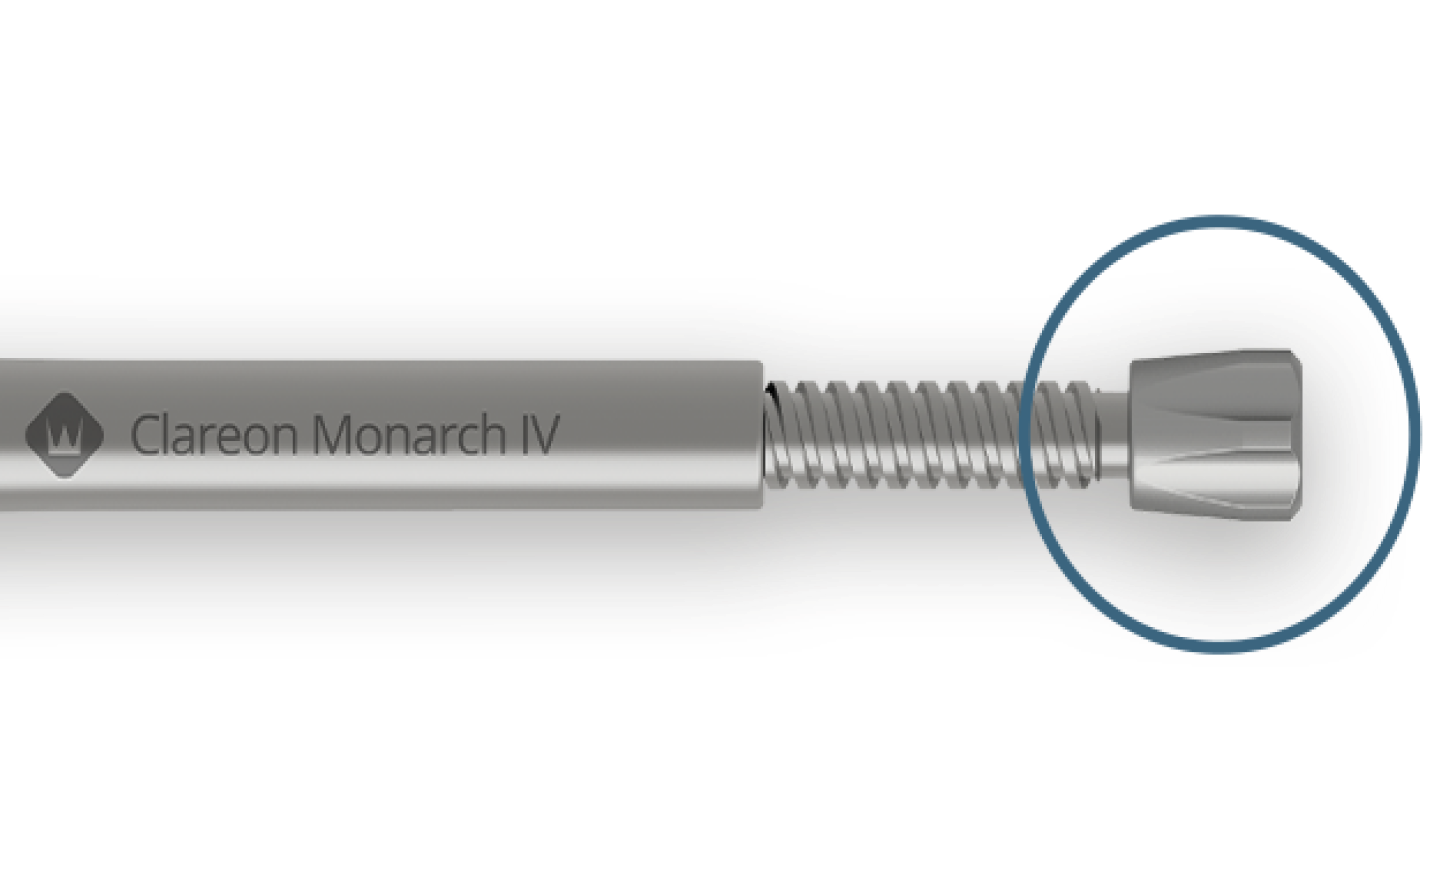 Pieza de mano Clareon Monarch IV en posición horizontal. Hay un círculo azul sobre el botón giratorio aumentado para llamar la atención sobre el mismo.